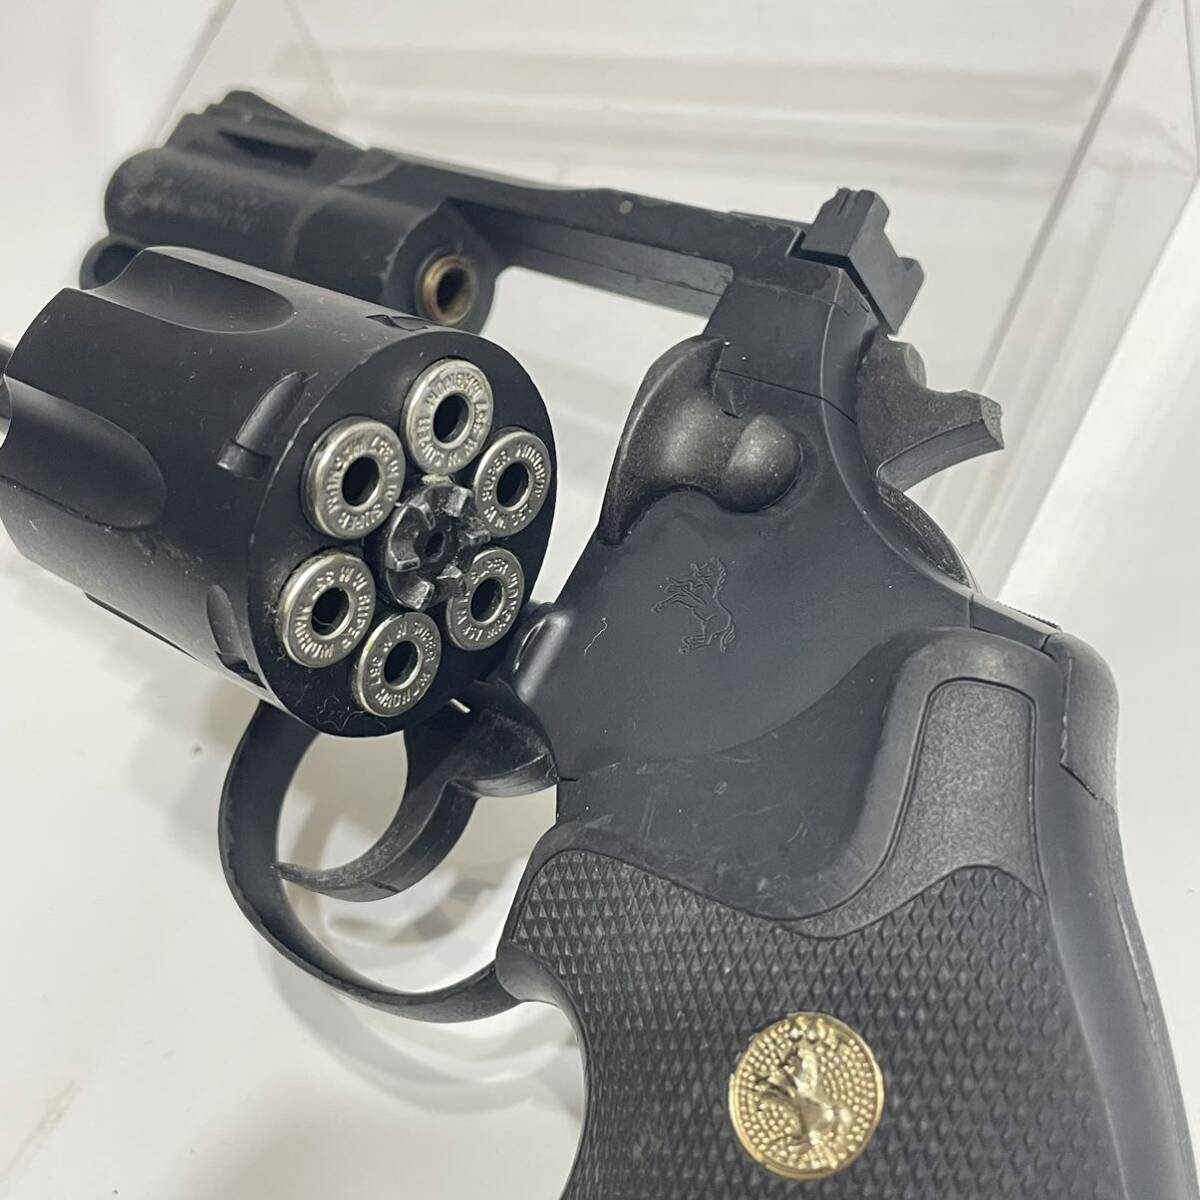 1 jpy ~ PYTHON 357 MAGNUM CTG gas revolver Junk Manufacturers unknown Colt python 357 Magnum gas gun 